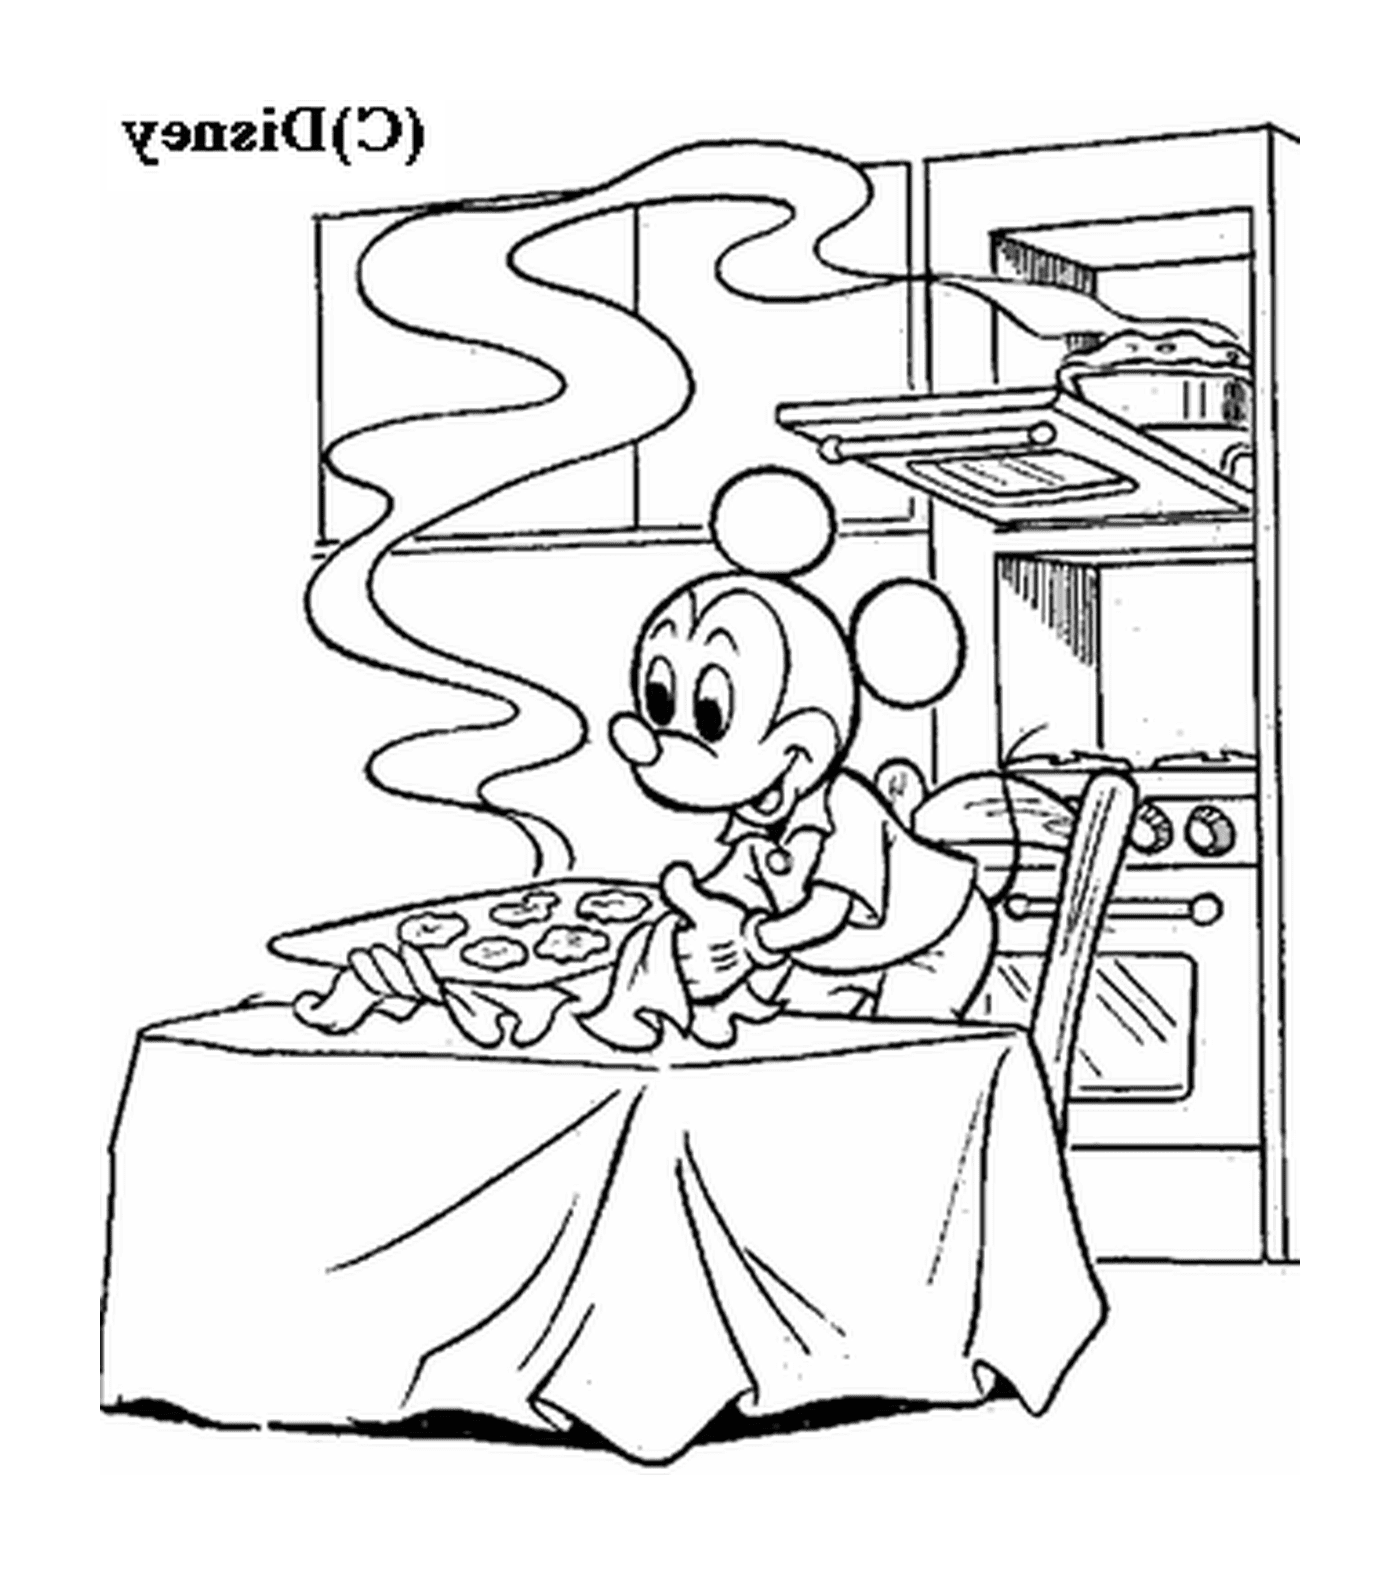  Микки делает печенье: мышь, сидящая за столом перед плитой 